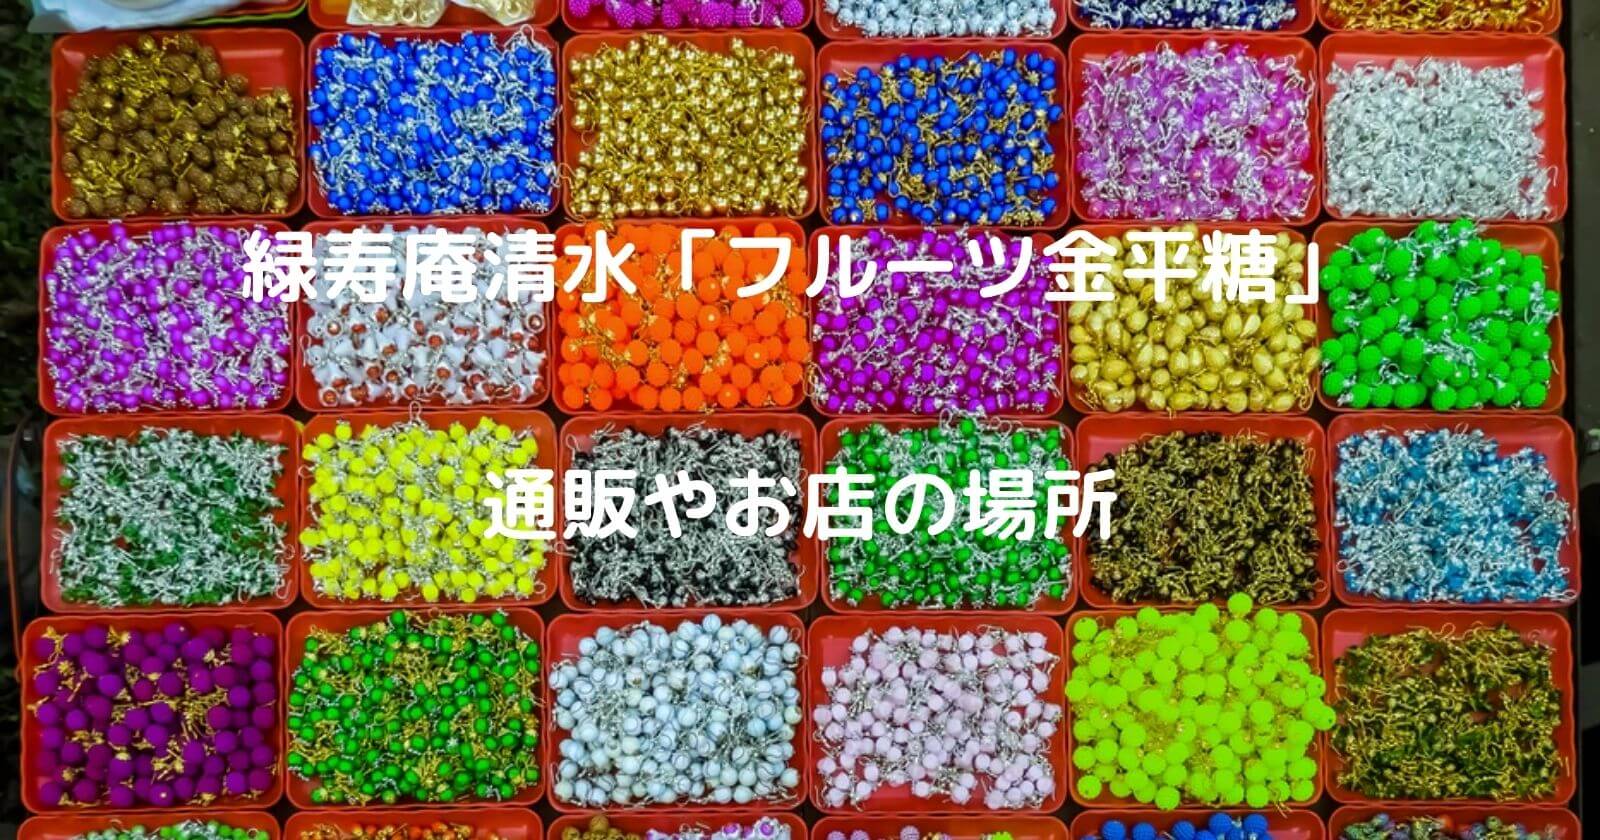 「緑寿庵清水」フルーツ金平糖の通販や店舗